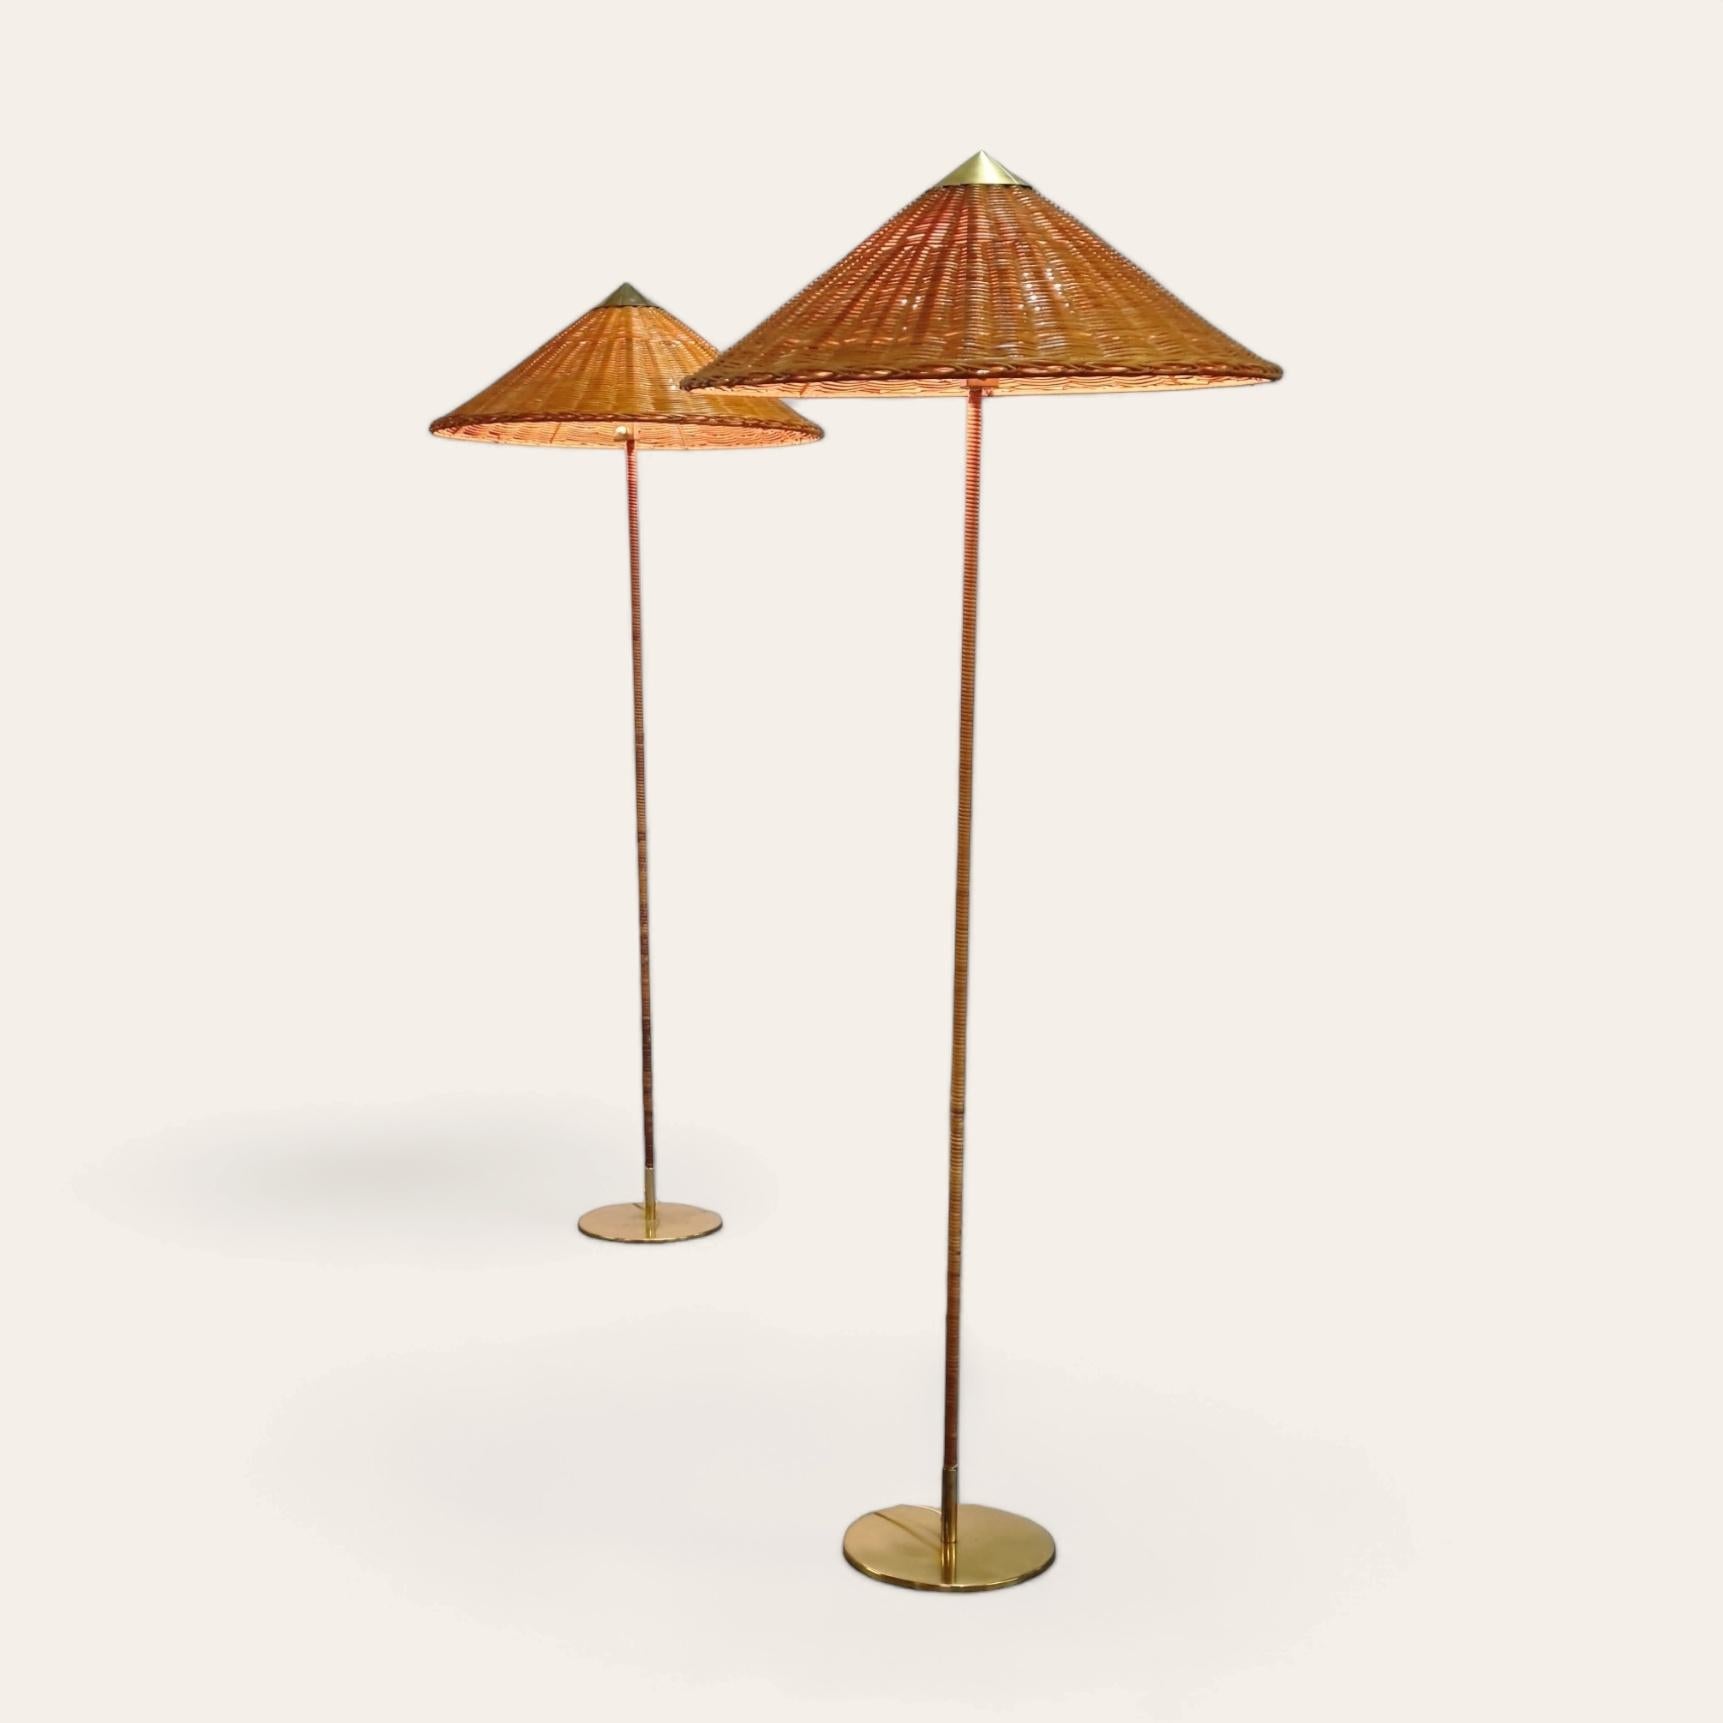 Ein schönes Paar der sehr begehrten Paavo Tynell Stehlampen Modell 9602 alias Chinesischer Hut für Idman.

Diese ikonische Stehleuchte wurde ursprünglich von Paavo Tynell in den späten 1930er Jahren entworfen und während der goldenen Ära des